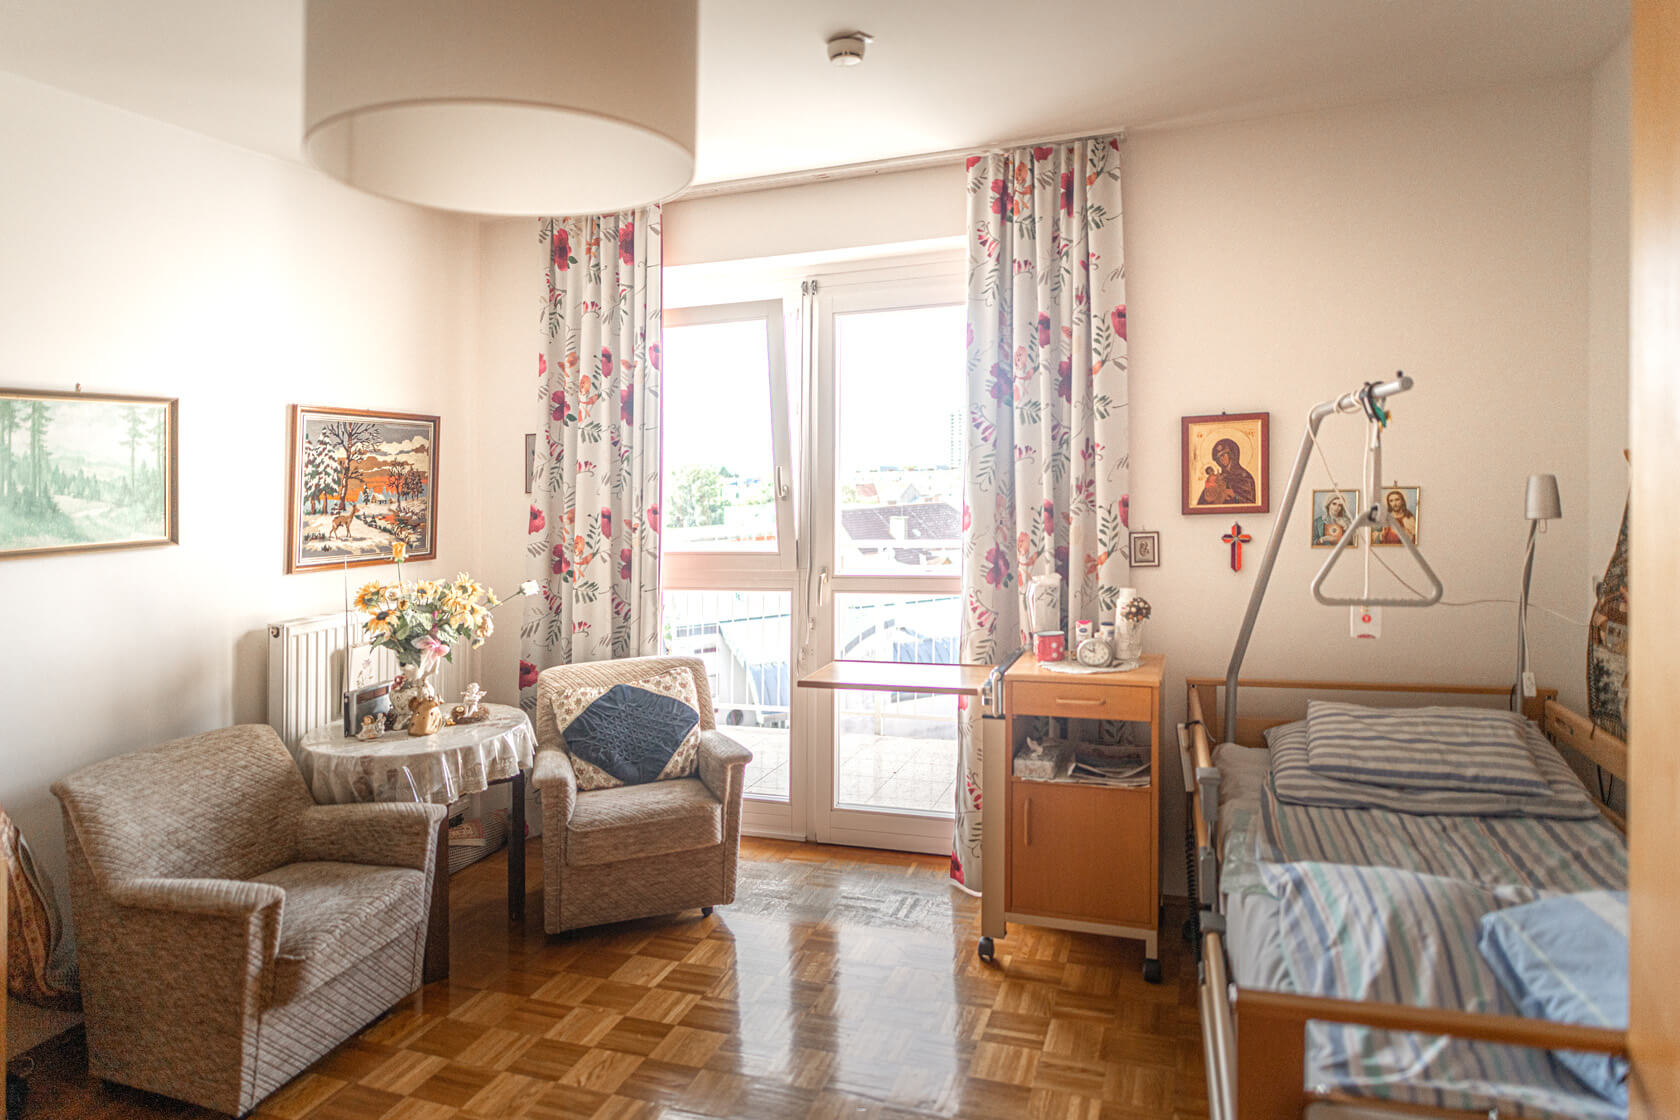 Bewohner:innenzimmer im Pflegewohnheim Aigner Rollett am Rosenhain mit Sitzecke, Bett, Parkettboden und verschiedenen Bildern an der Wand